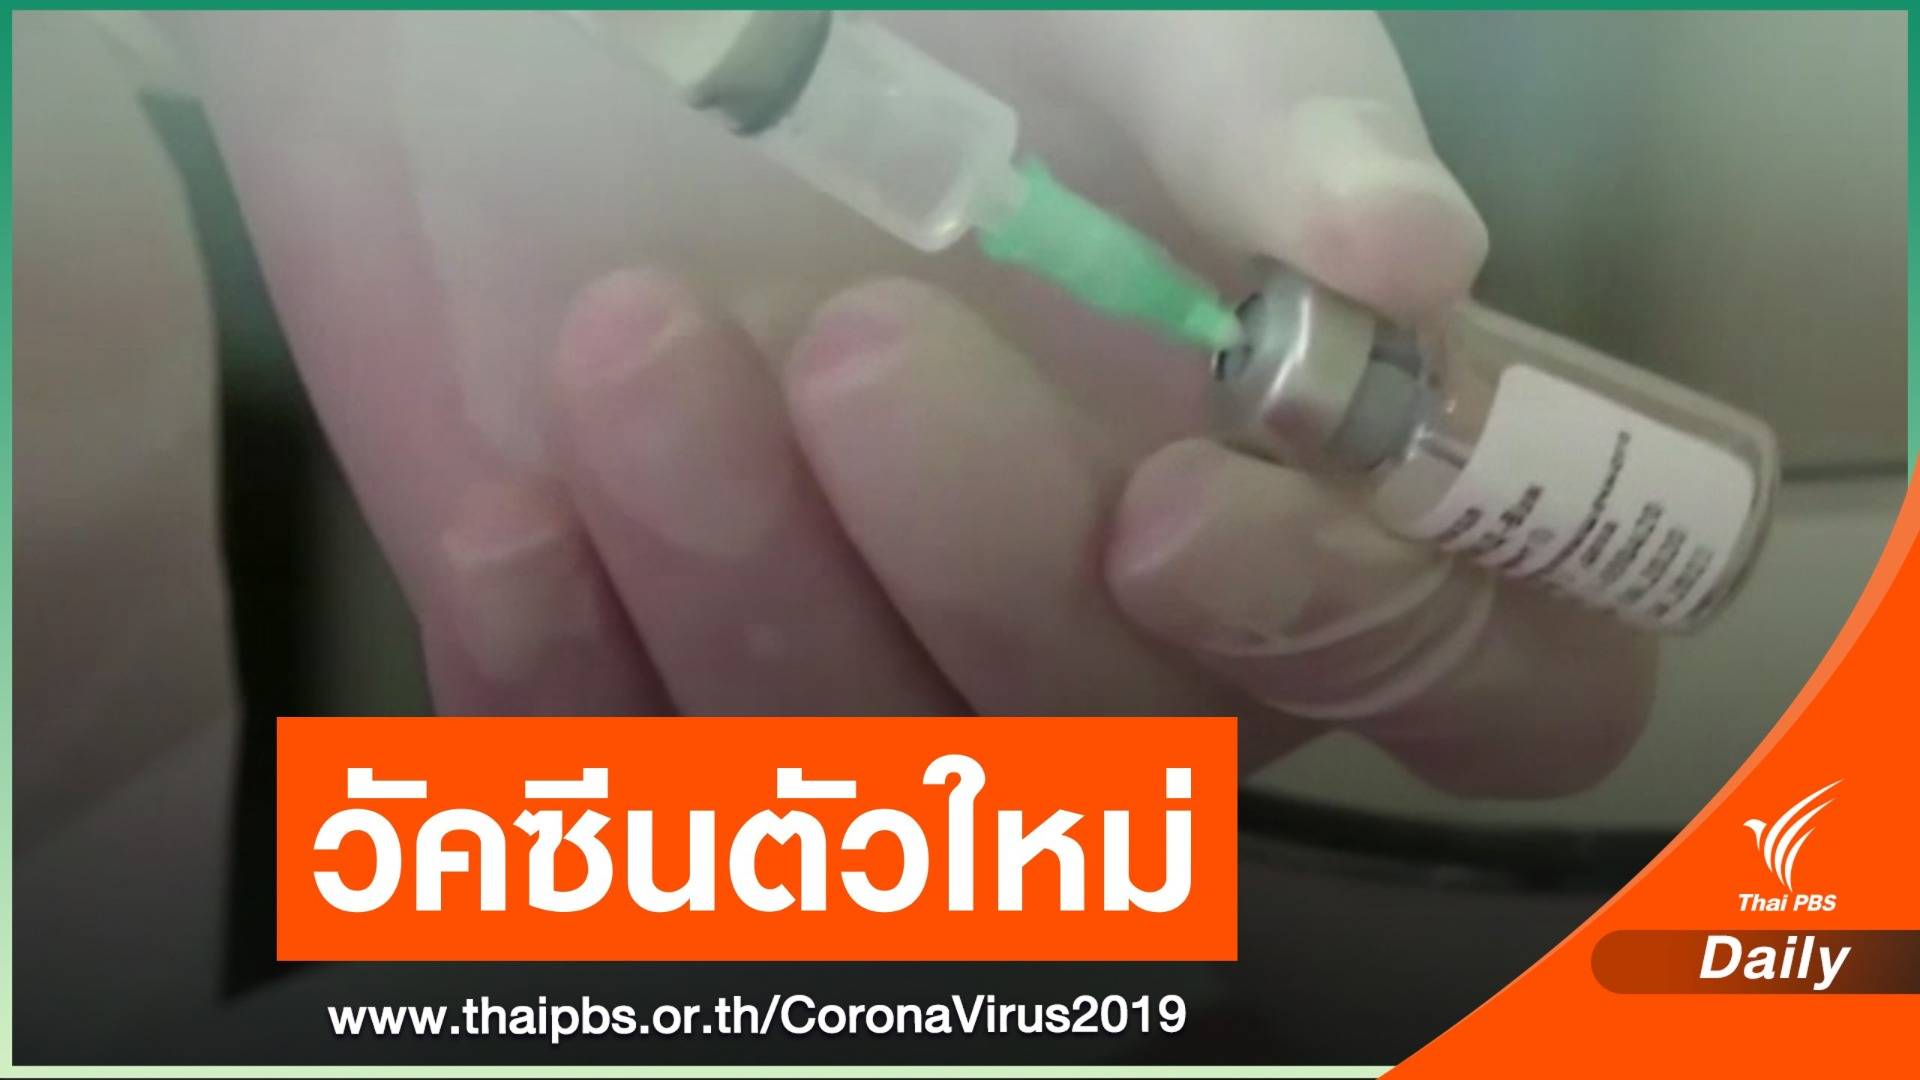 รัสเซียเตรียมรับรองวัคซีนต้าน COVID-19 ตัวที่ 2 เดือน ต.ค.นี้